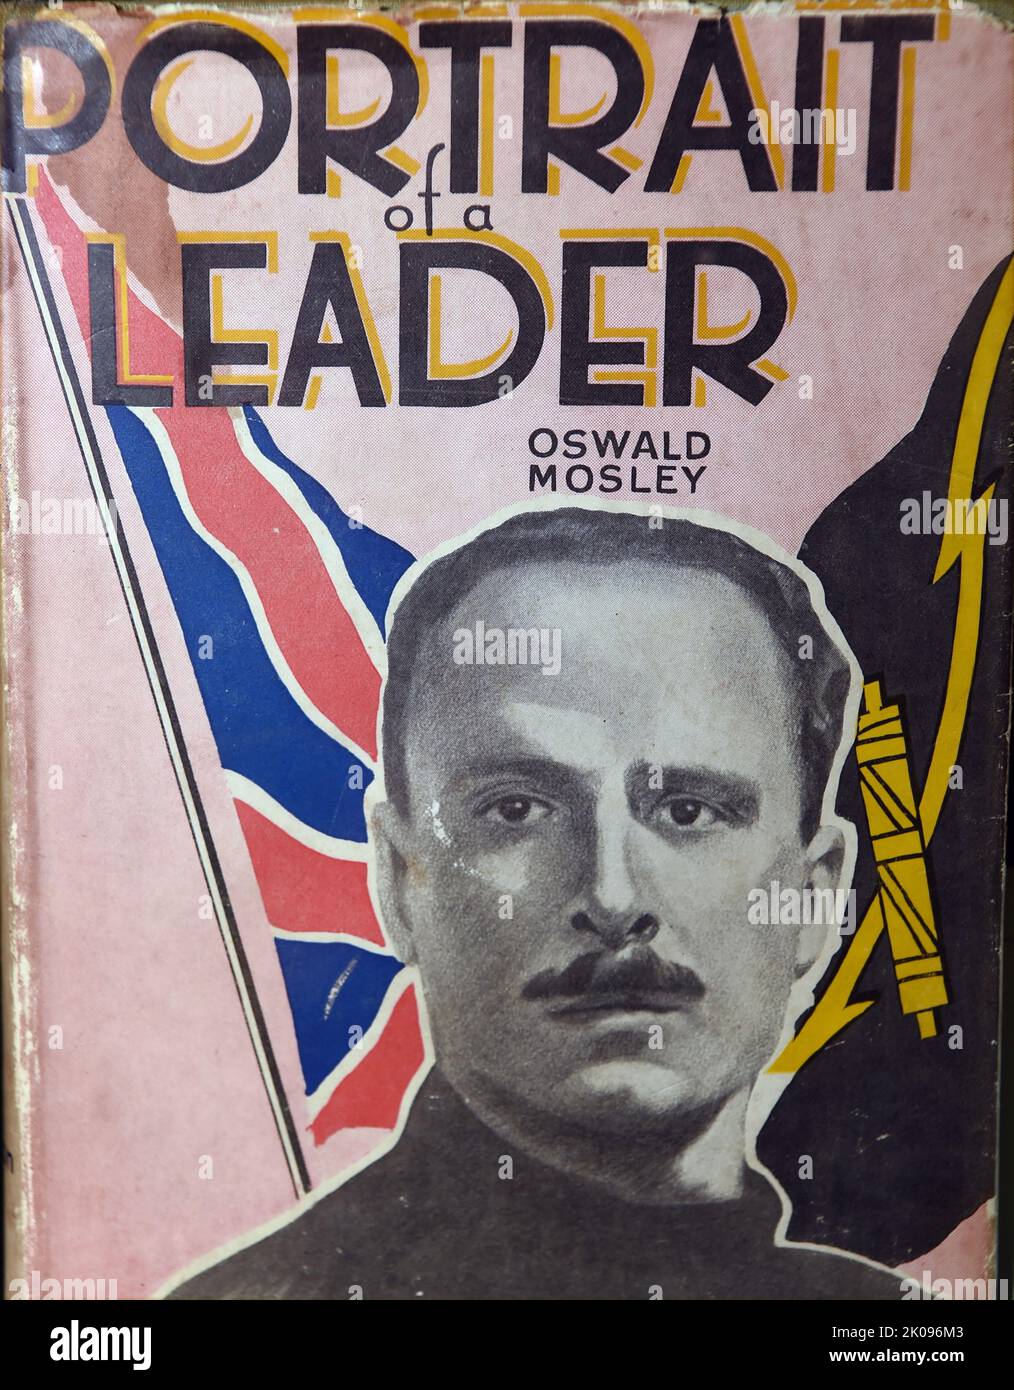 Sir Oswald Ernald Mosley, 6th Baronet (16 novembre 1896 - 3 décembre 1980) est un homme politique britannique qui s'est fait connaître en 1920s en tant que député. Plus tard en 1930s, après avoir été déçu par la politique dominante, est devenu le chef de l'Union britannique des fascistes (BUF). Banque D'Images